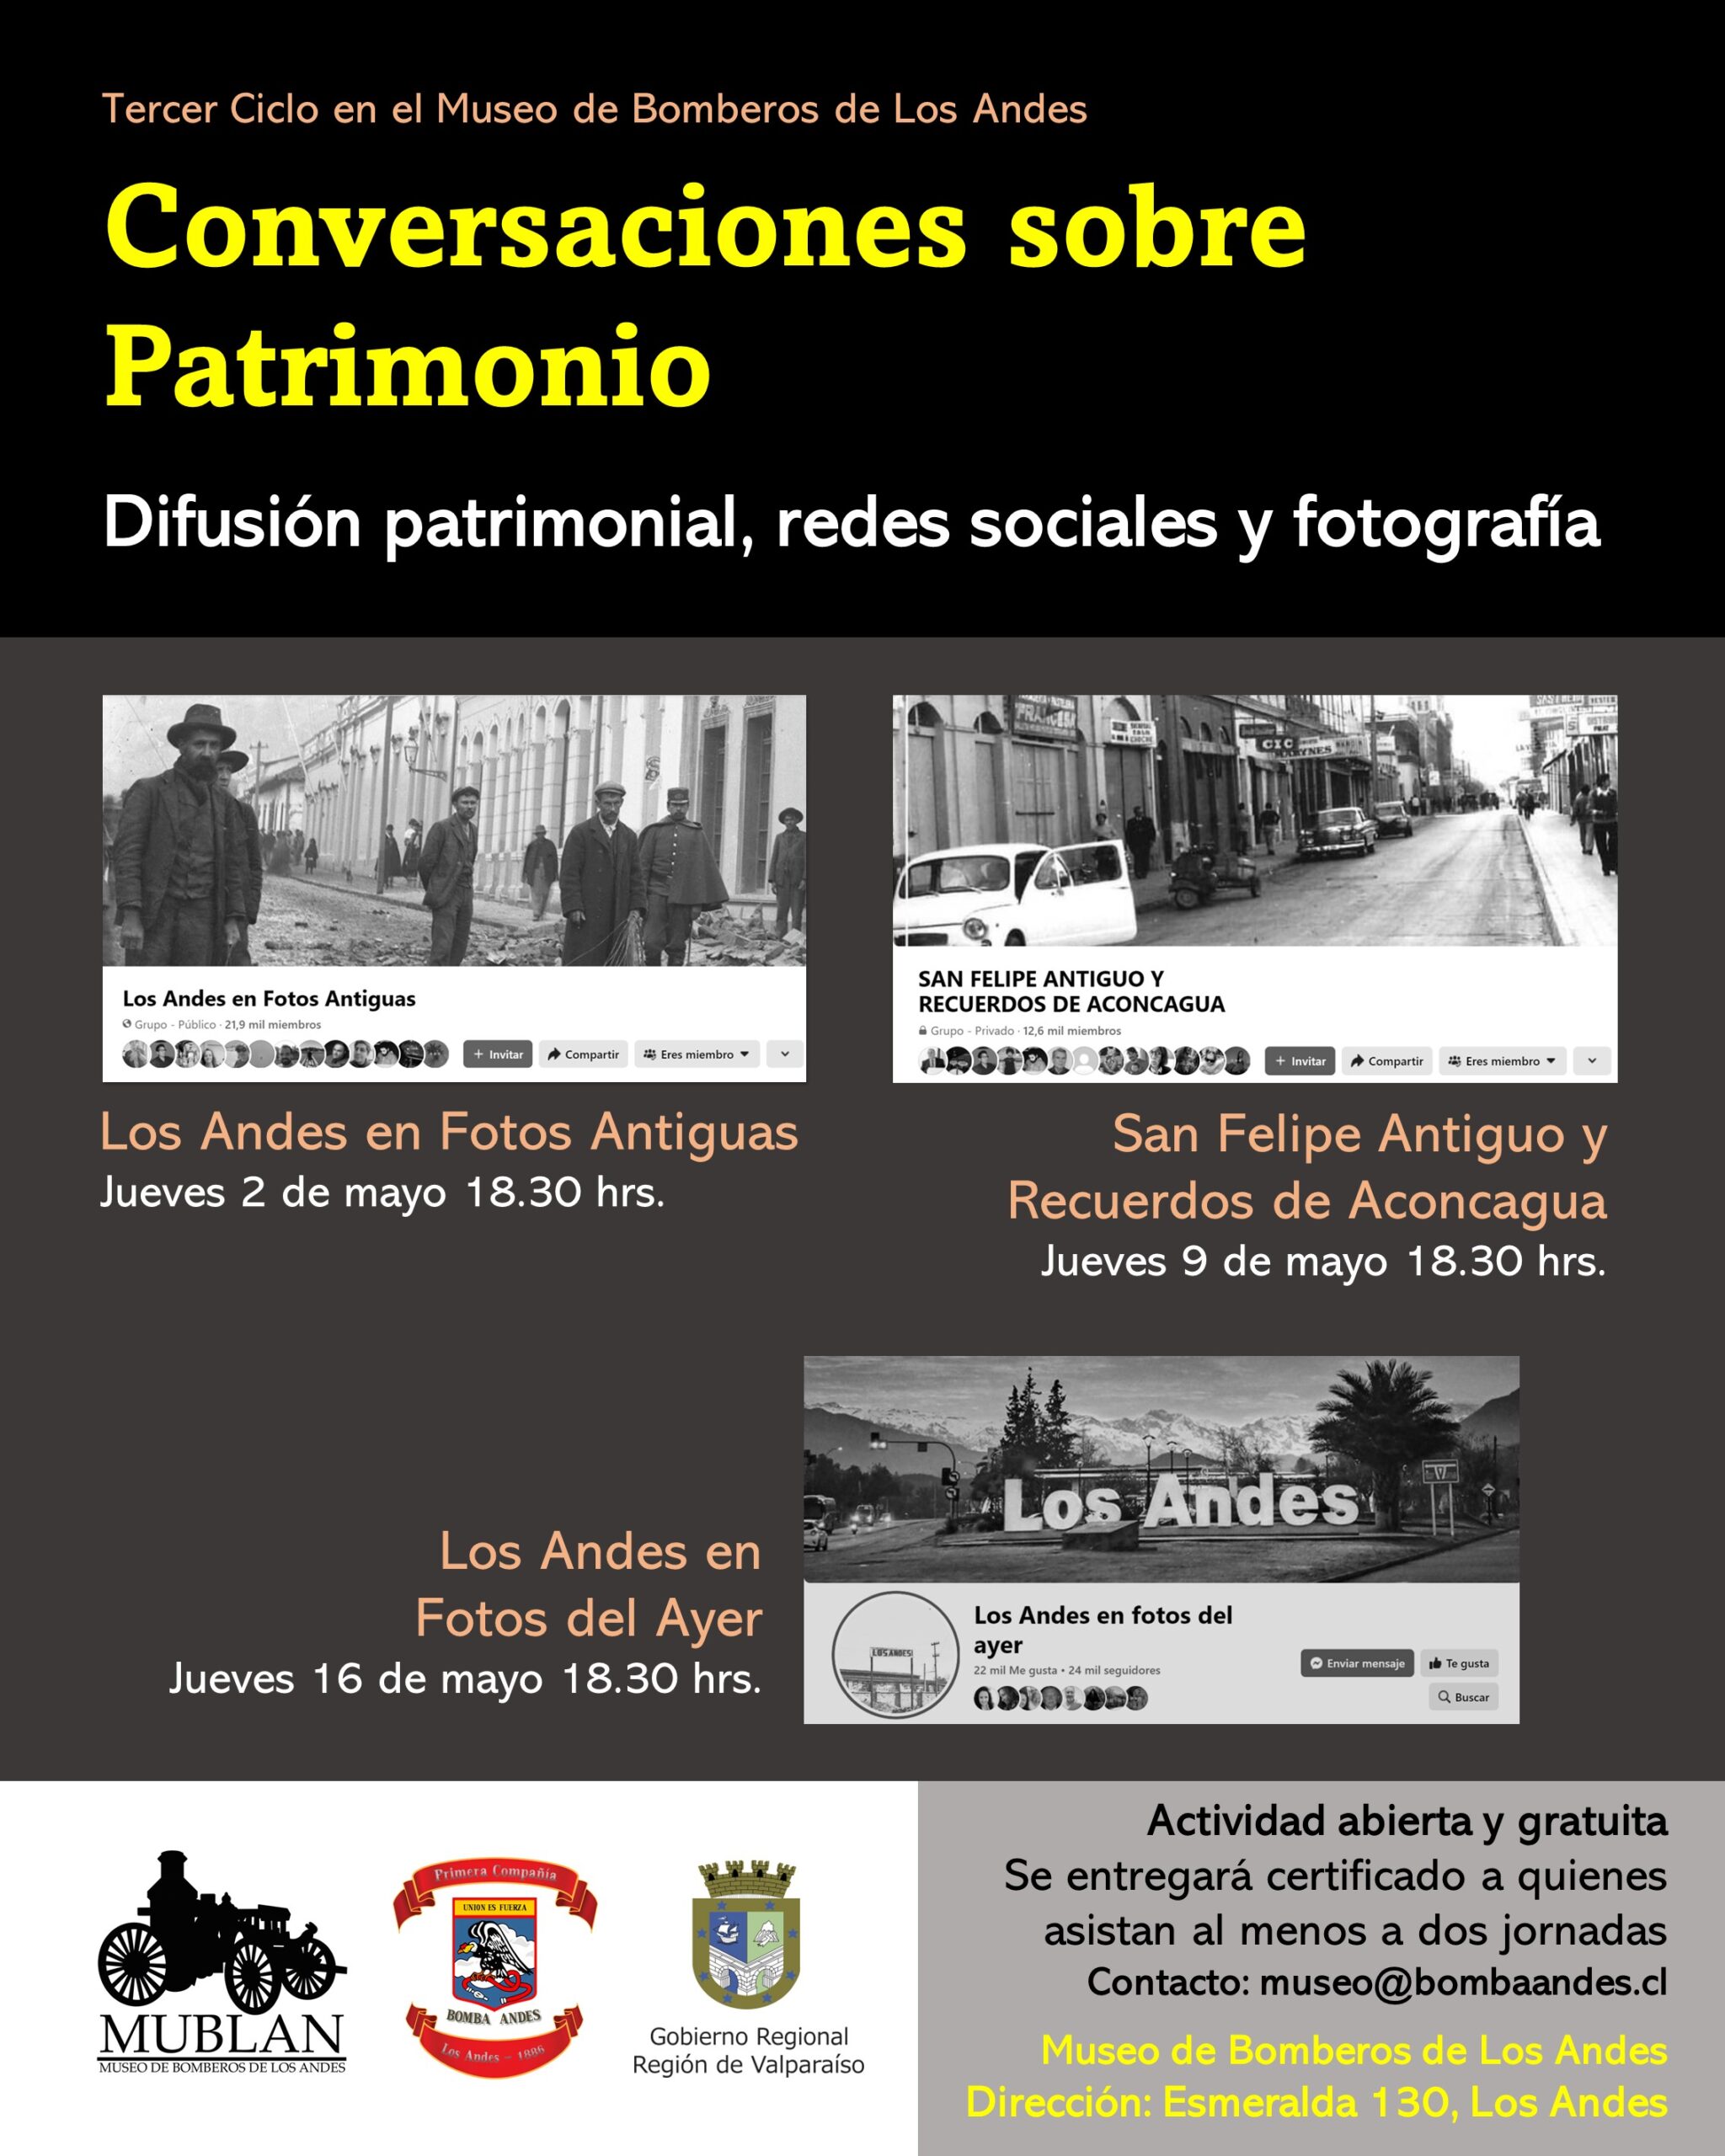 LOS ANDES: Museo de Bomberos de Los Andes y Bomba Andes invitan a Conversatorio sobre Patrimonio